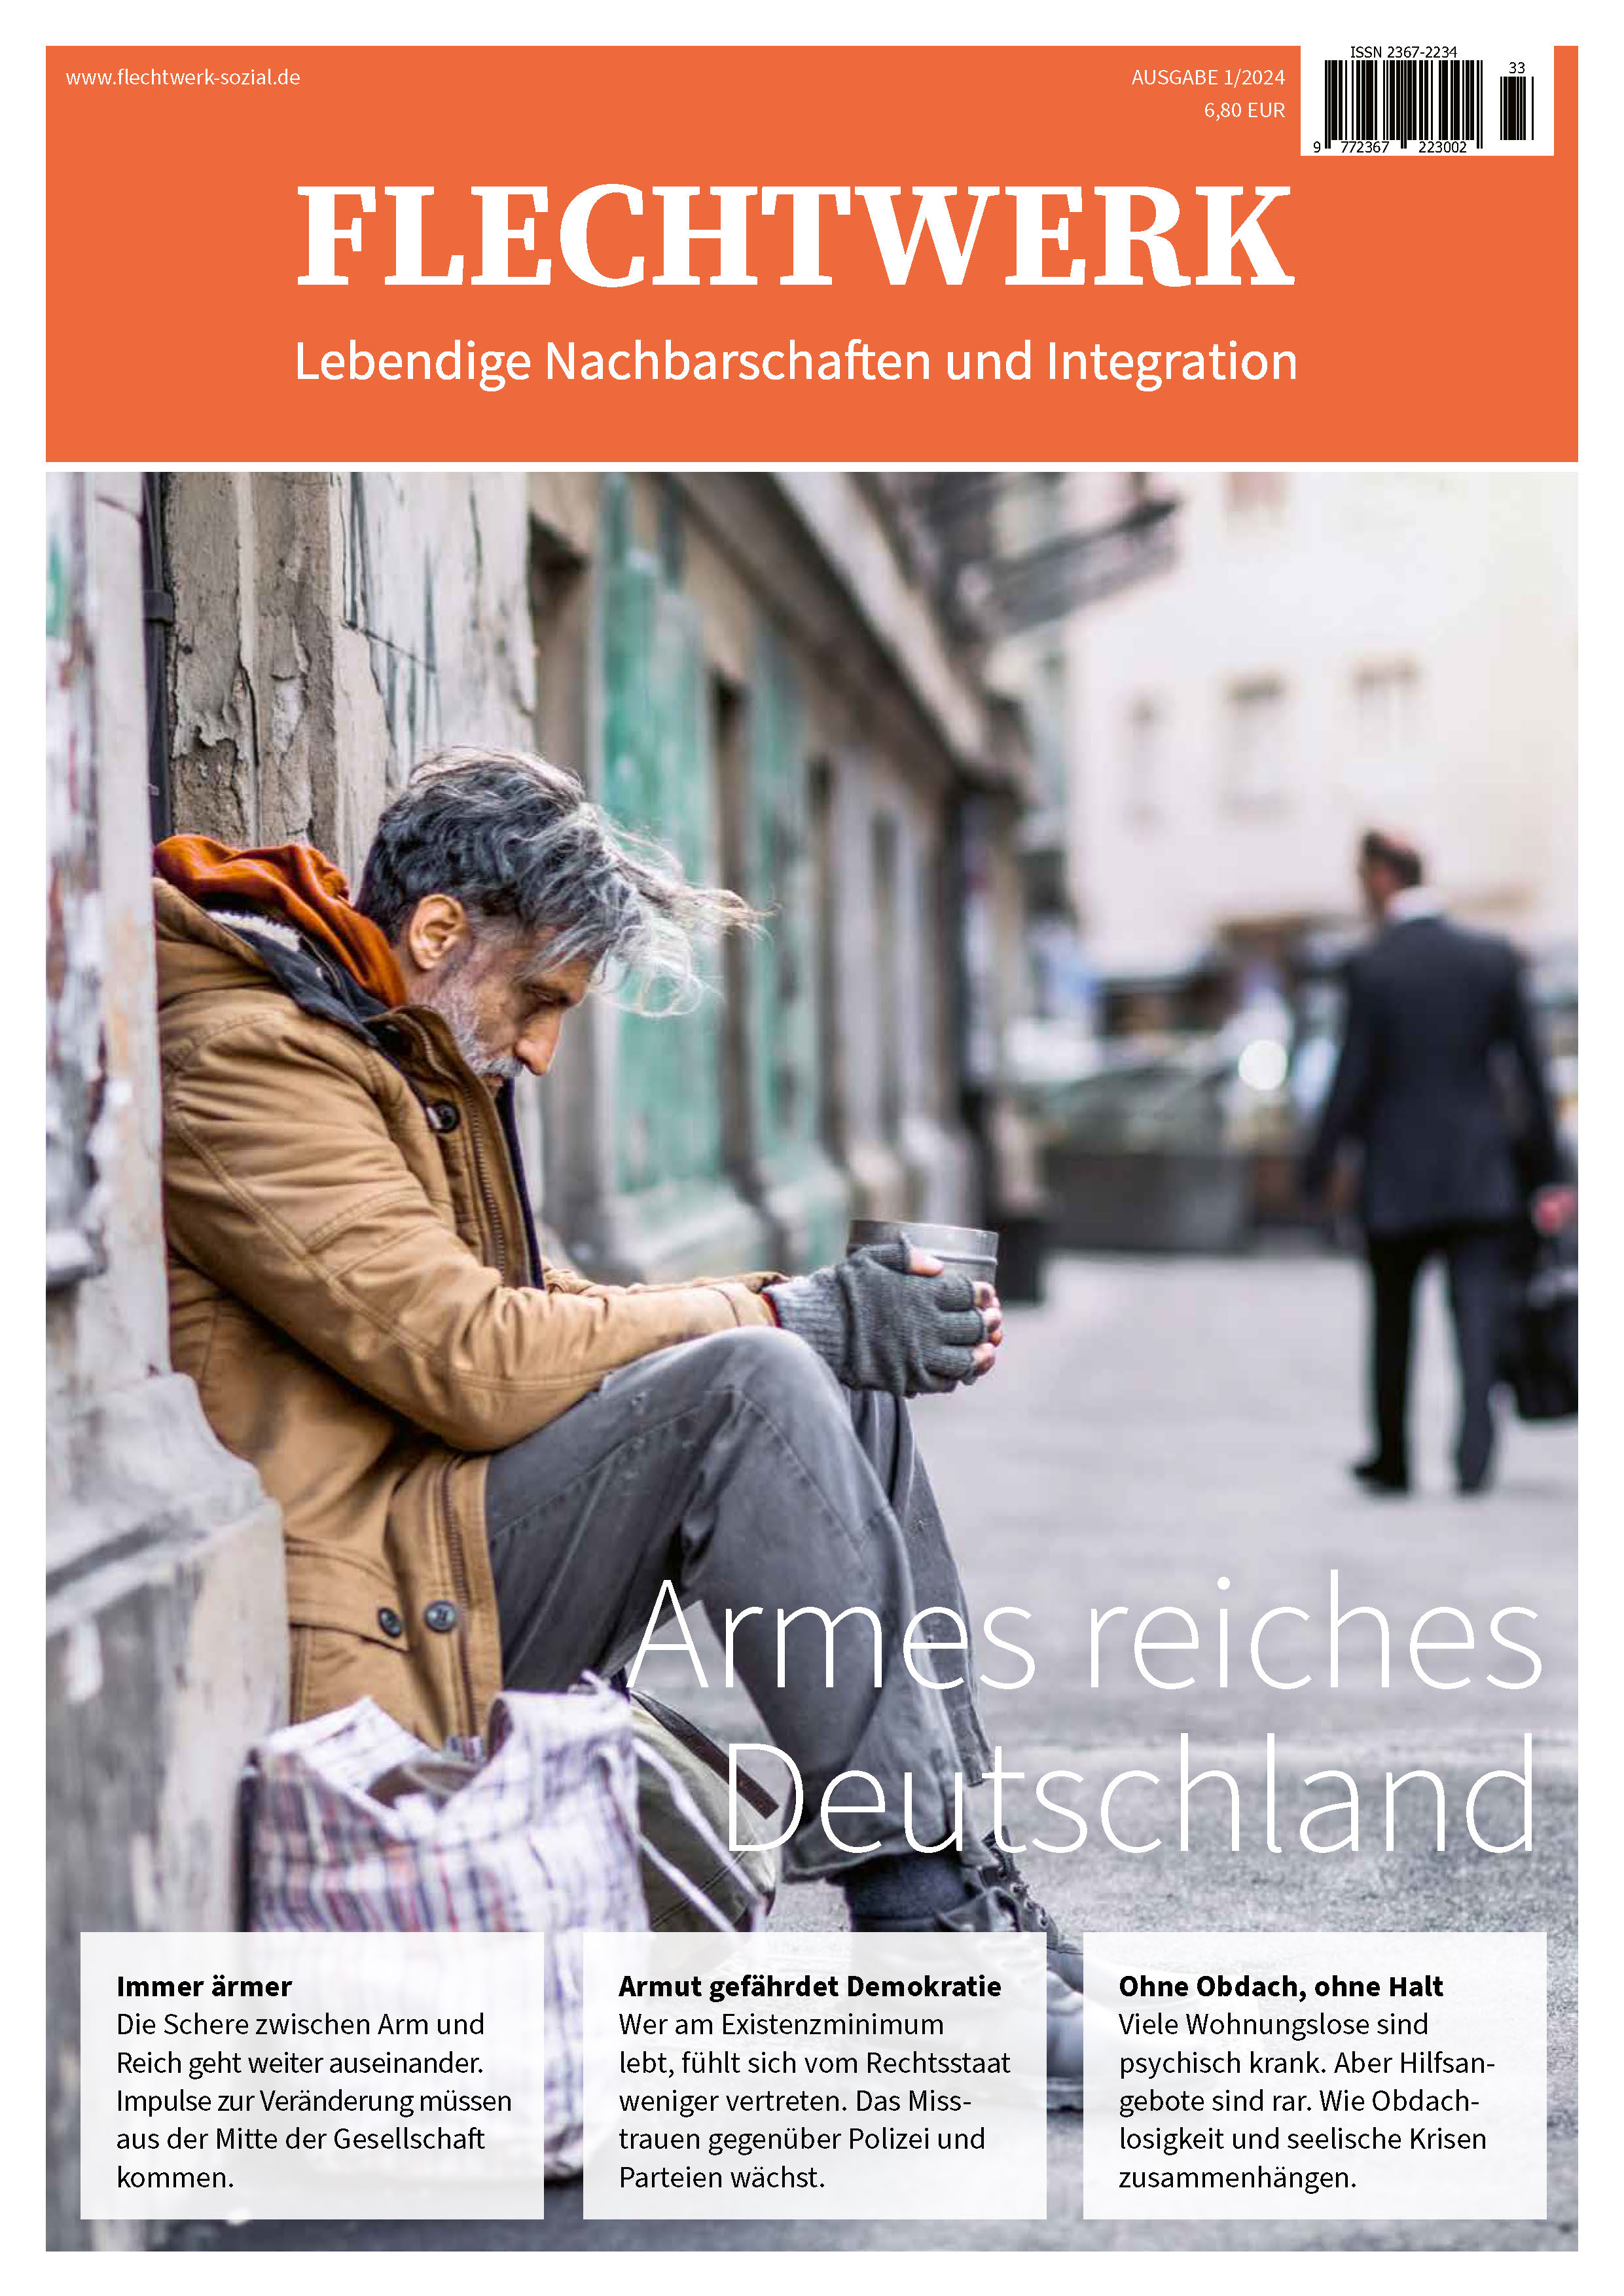 Titelseite: Armes reiches Deutschland